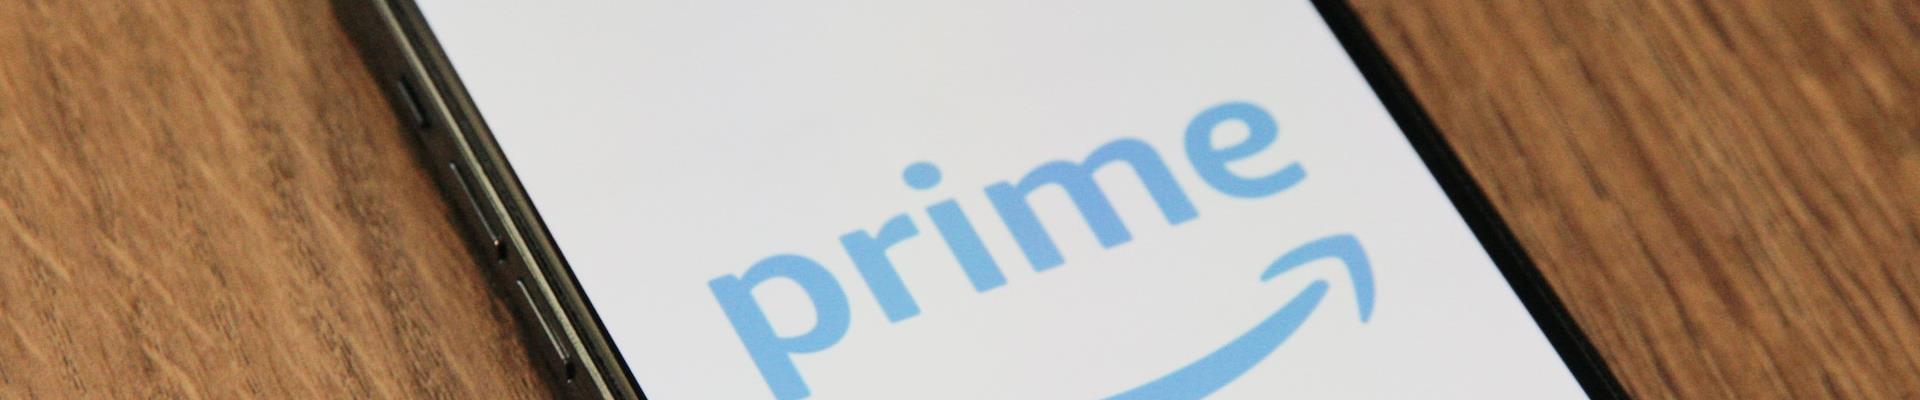 Ação da Amazon Prime terá campanha global inspirada em novos começos